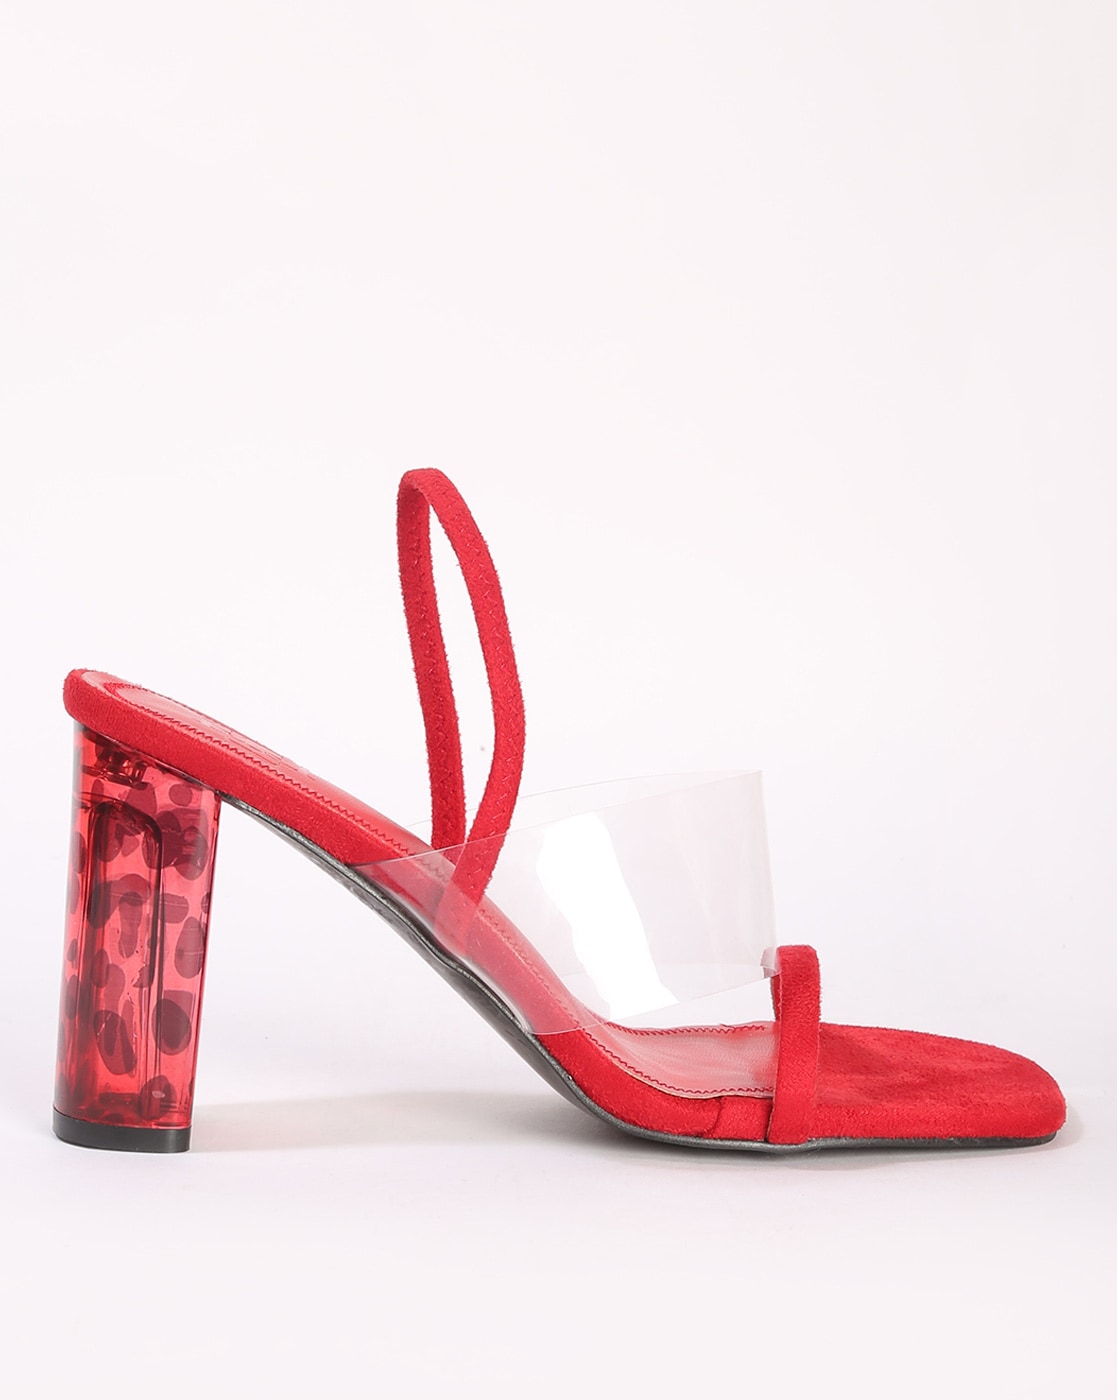 What Red Heels To Buy 2020 | Heels, Red heels, Red block heel sandals